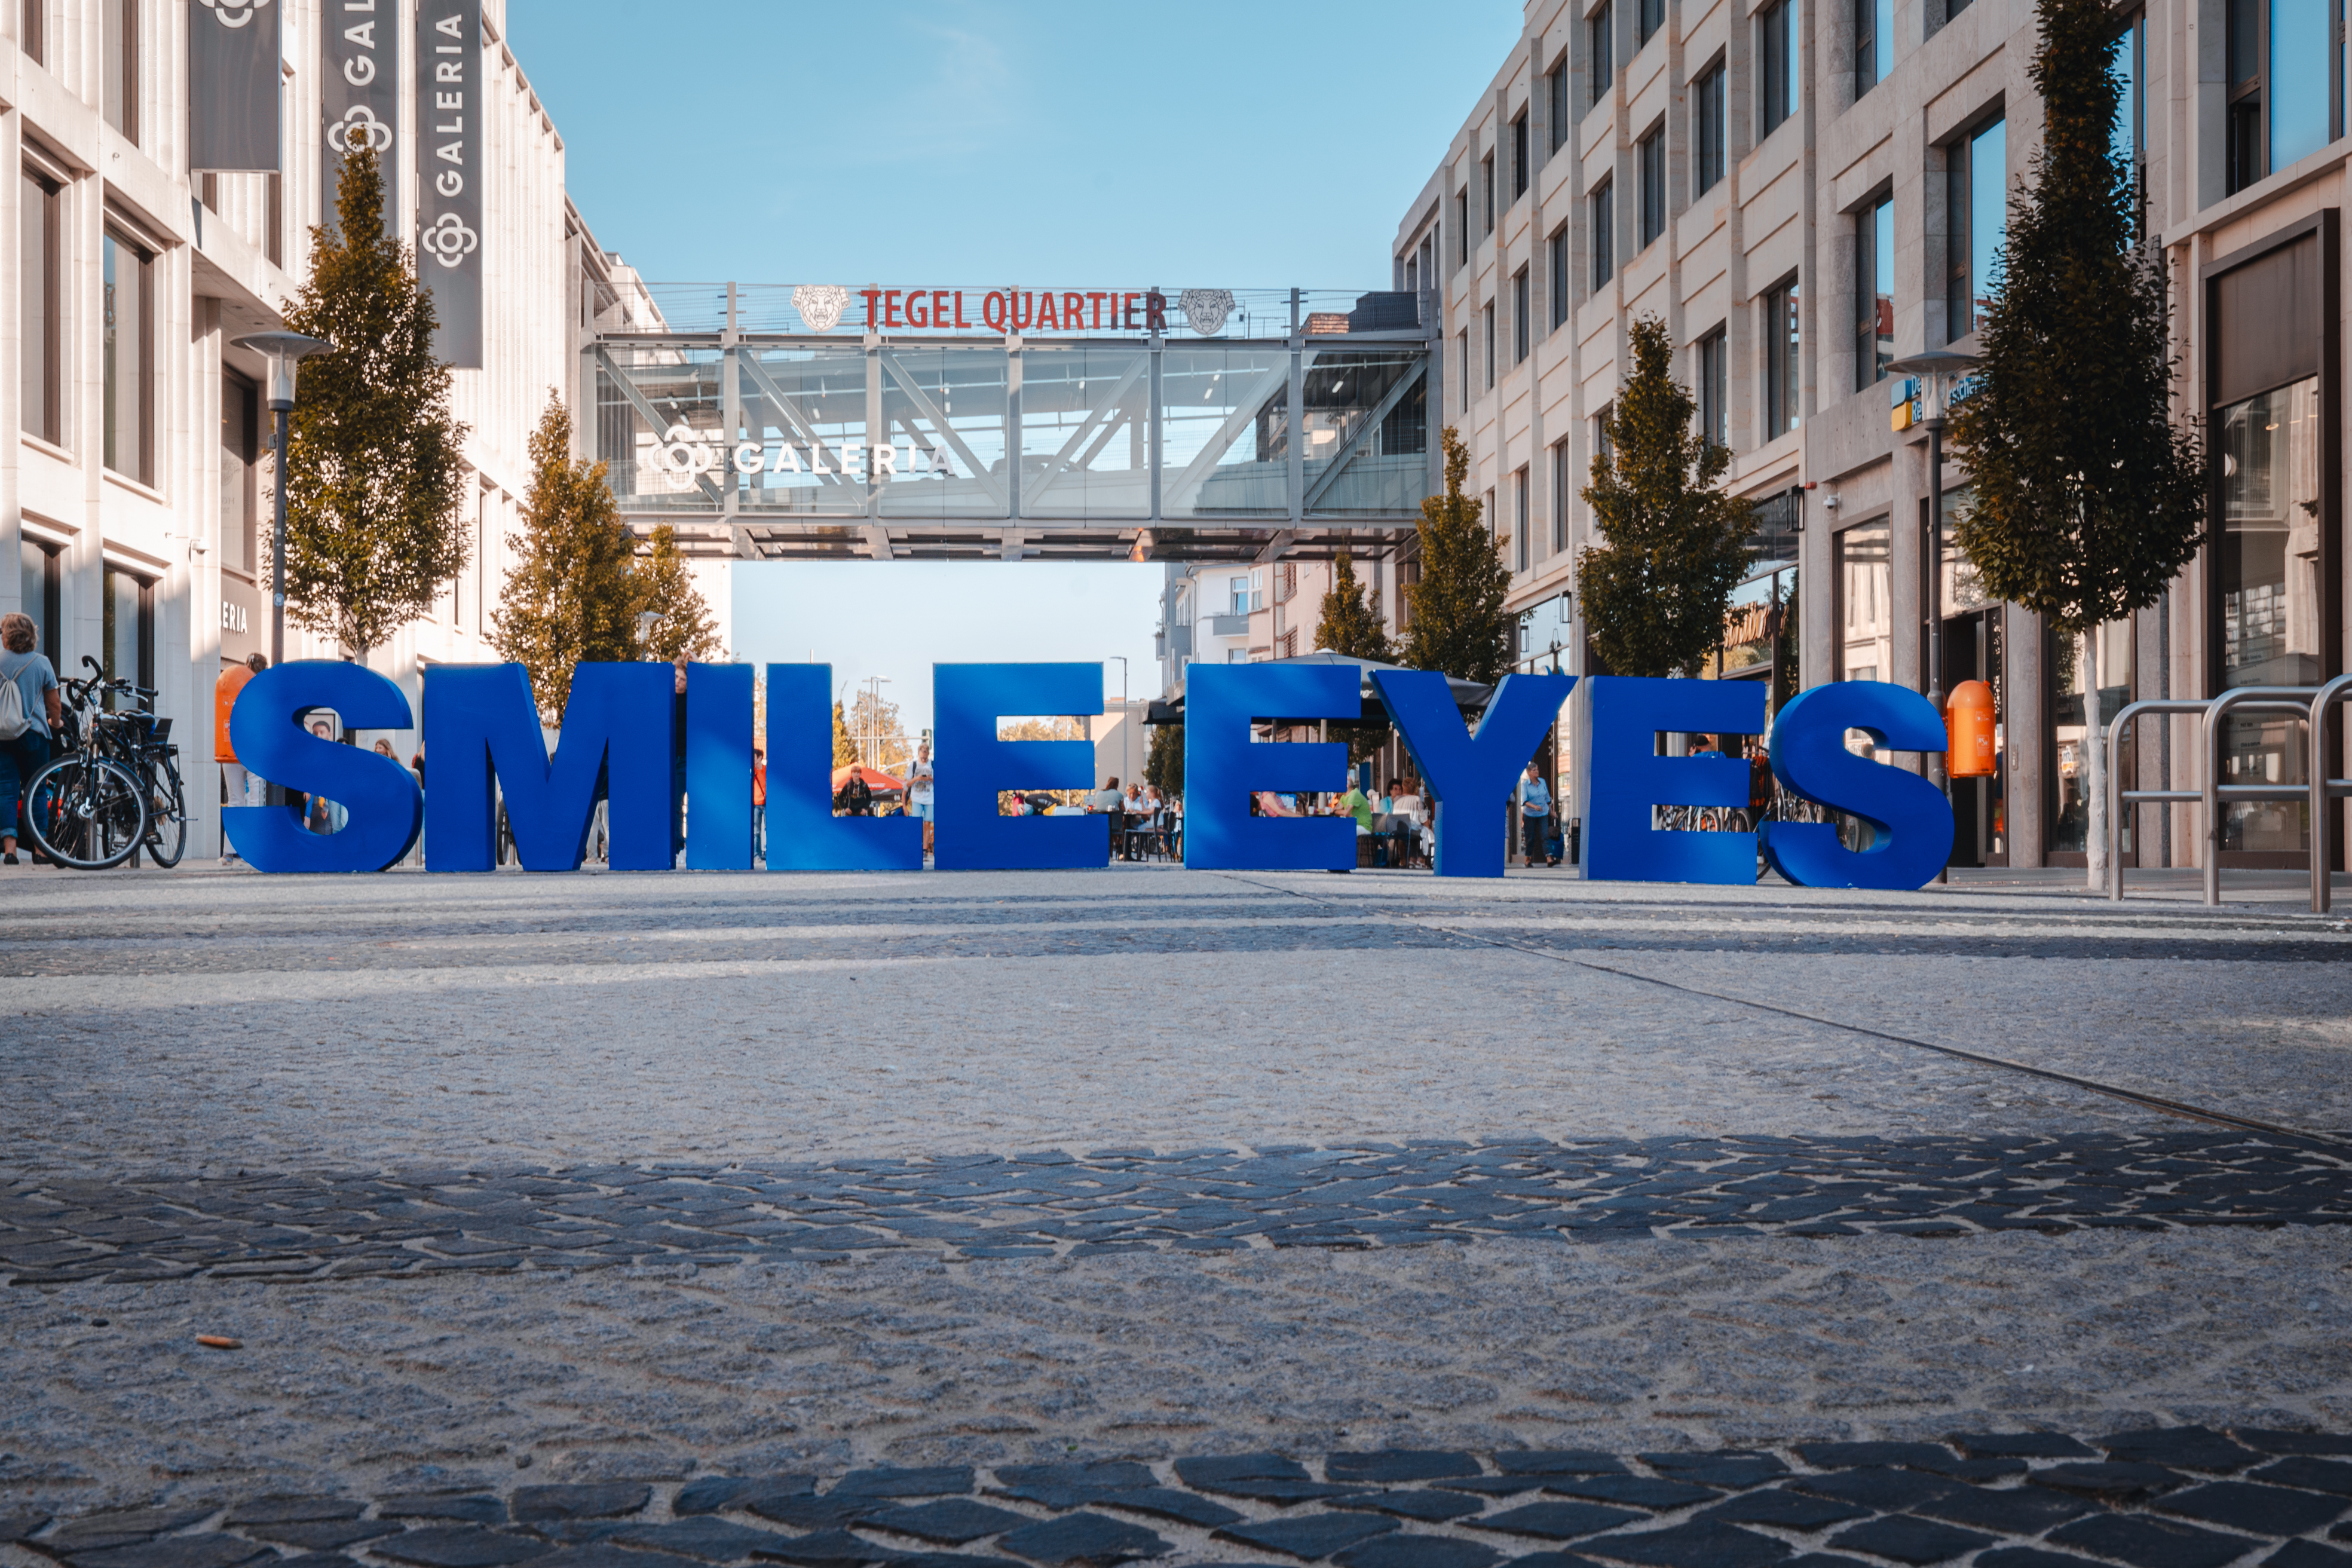 Das Smile Eyes Logo am Berlin Tegel Quartier.